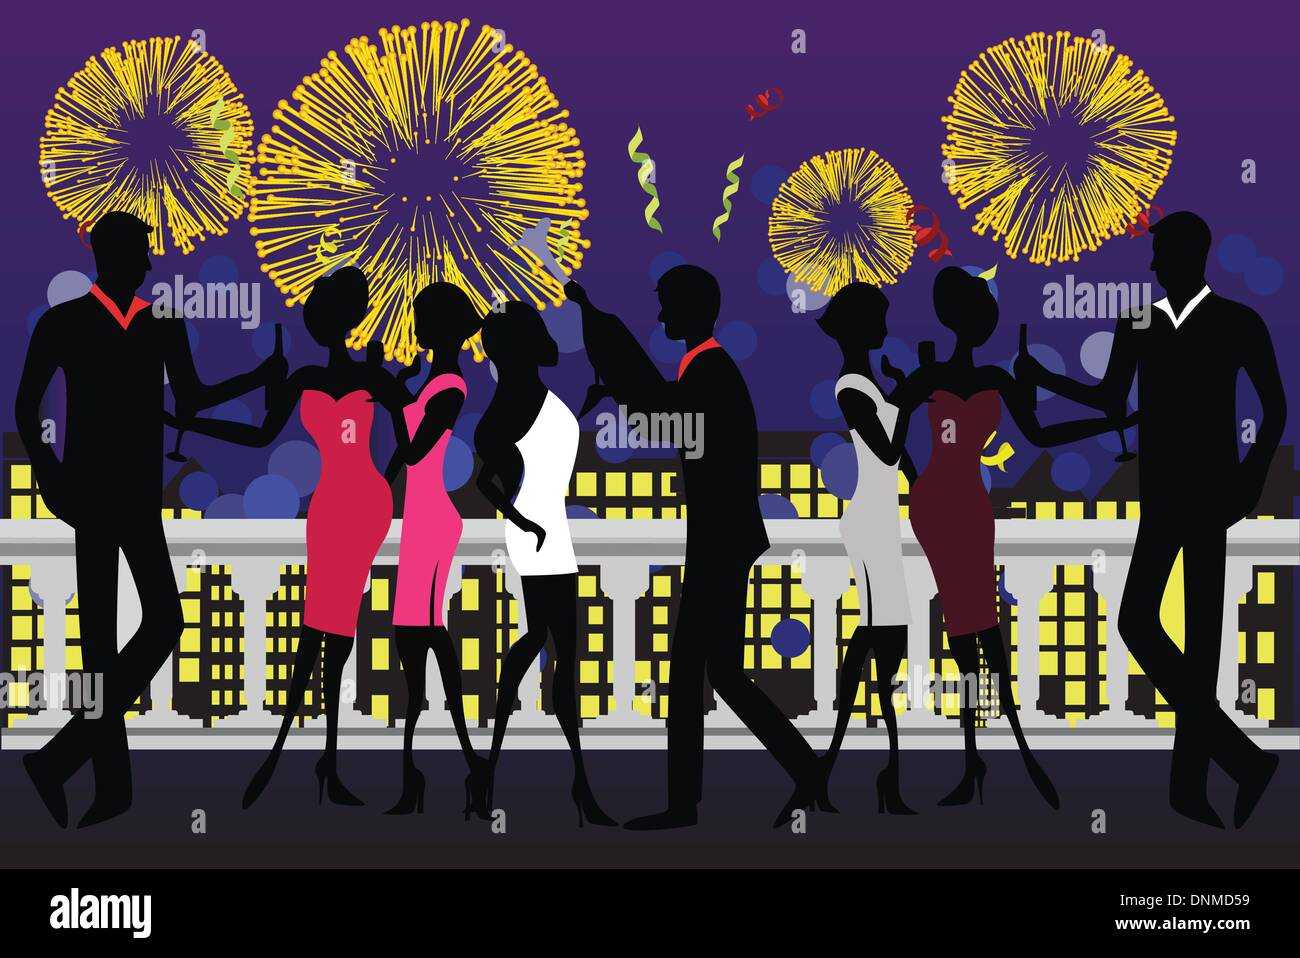 Illustrazione vettoriale di una festa di capodanno di festa con fuochi d'artificio Illustrazione Vettoriale